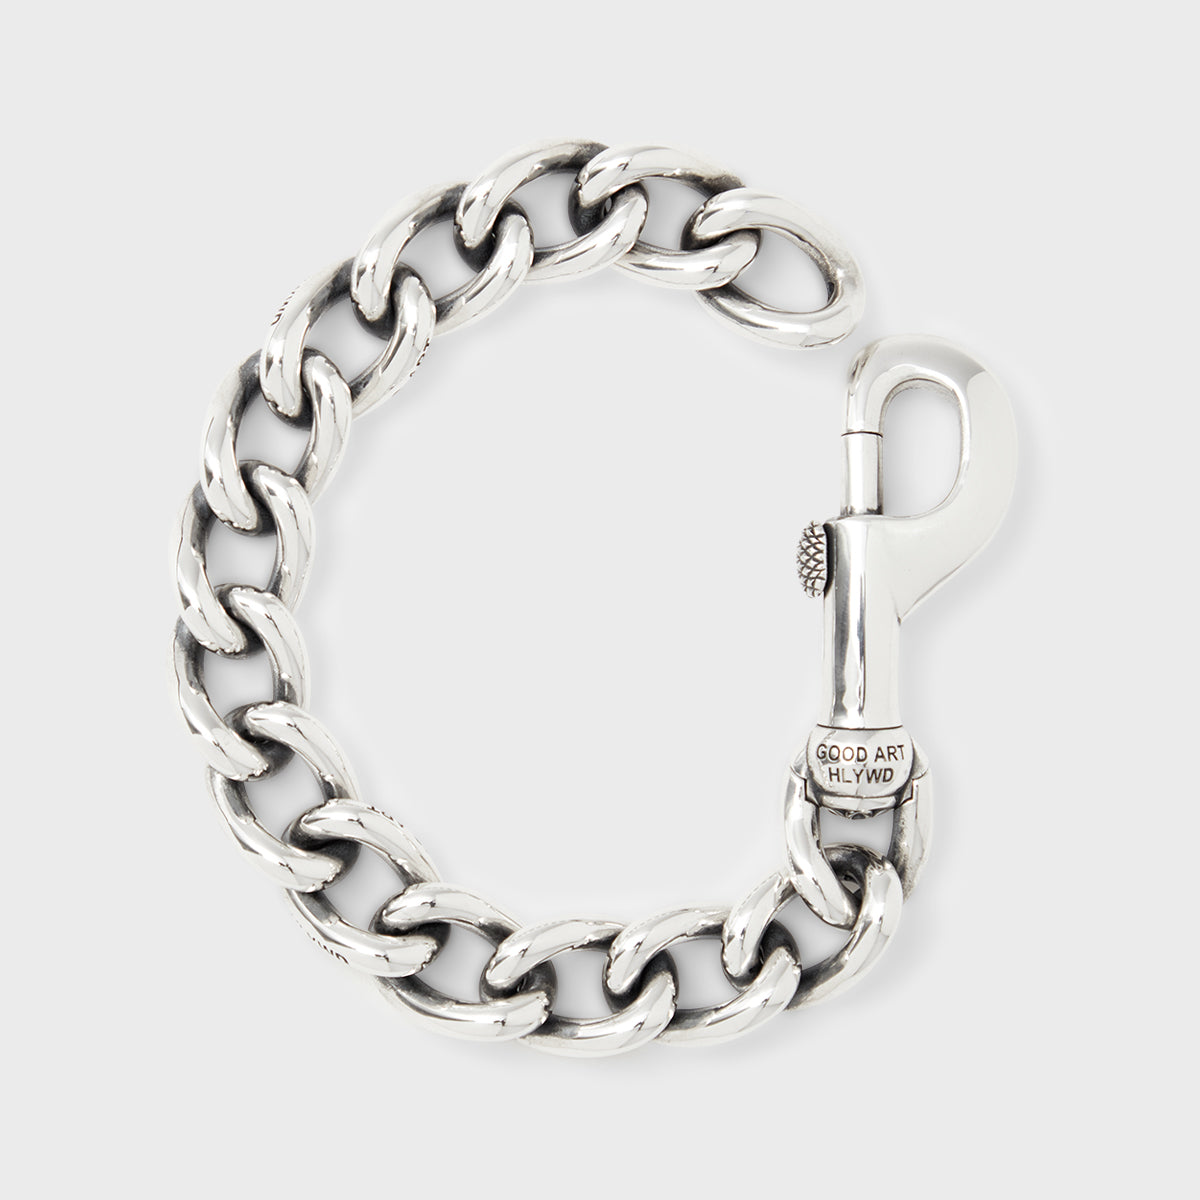 Fairfax Tru Value Bracelet - A